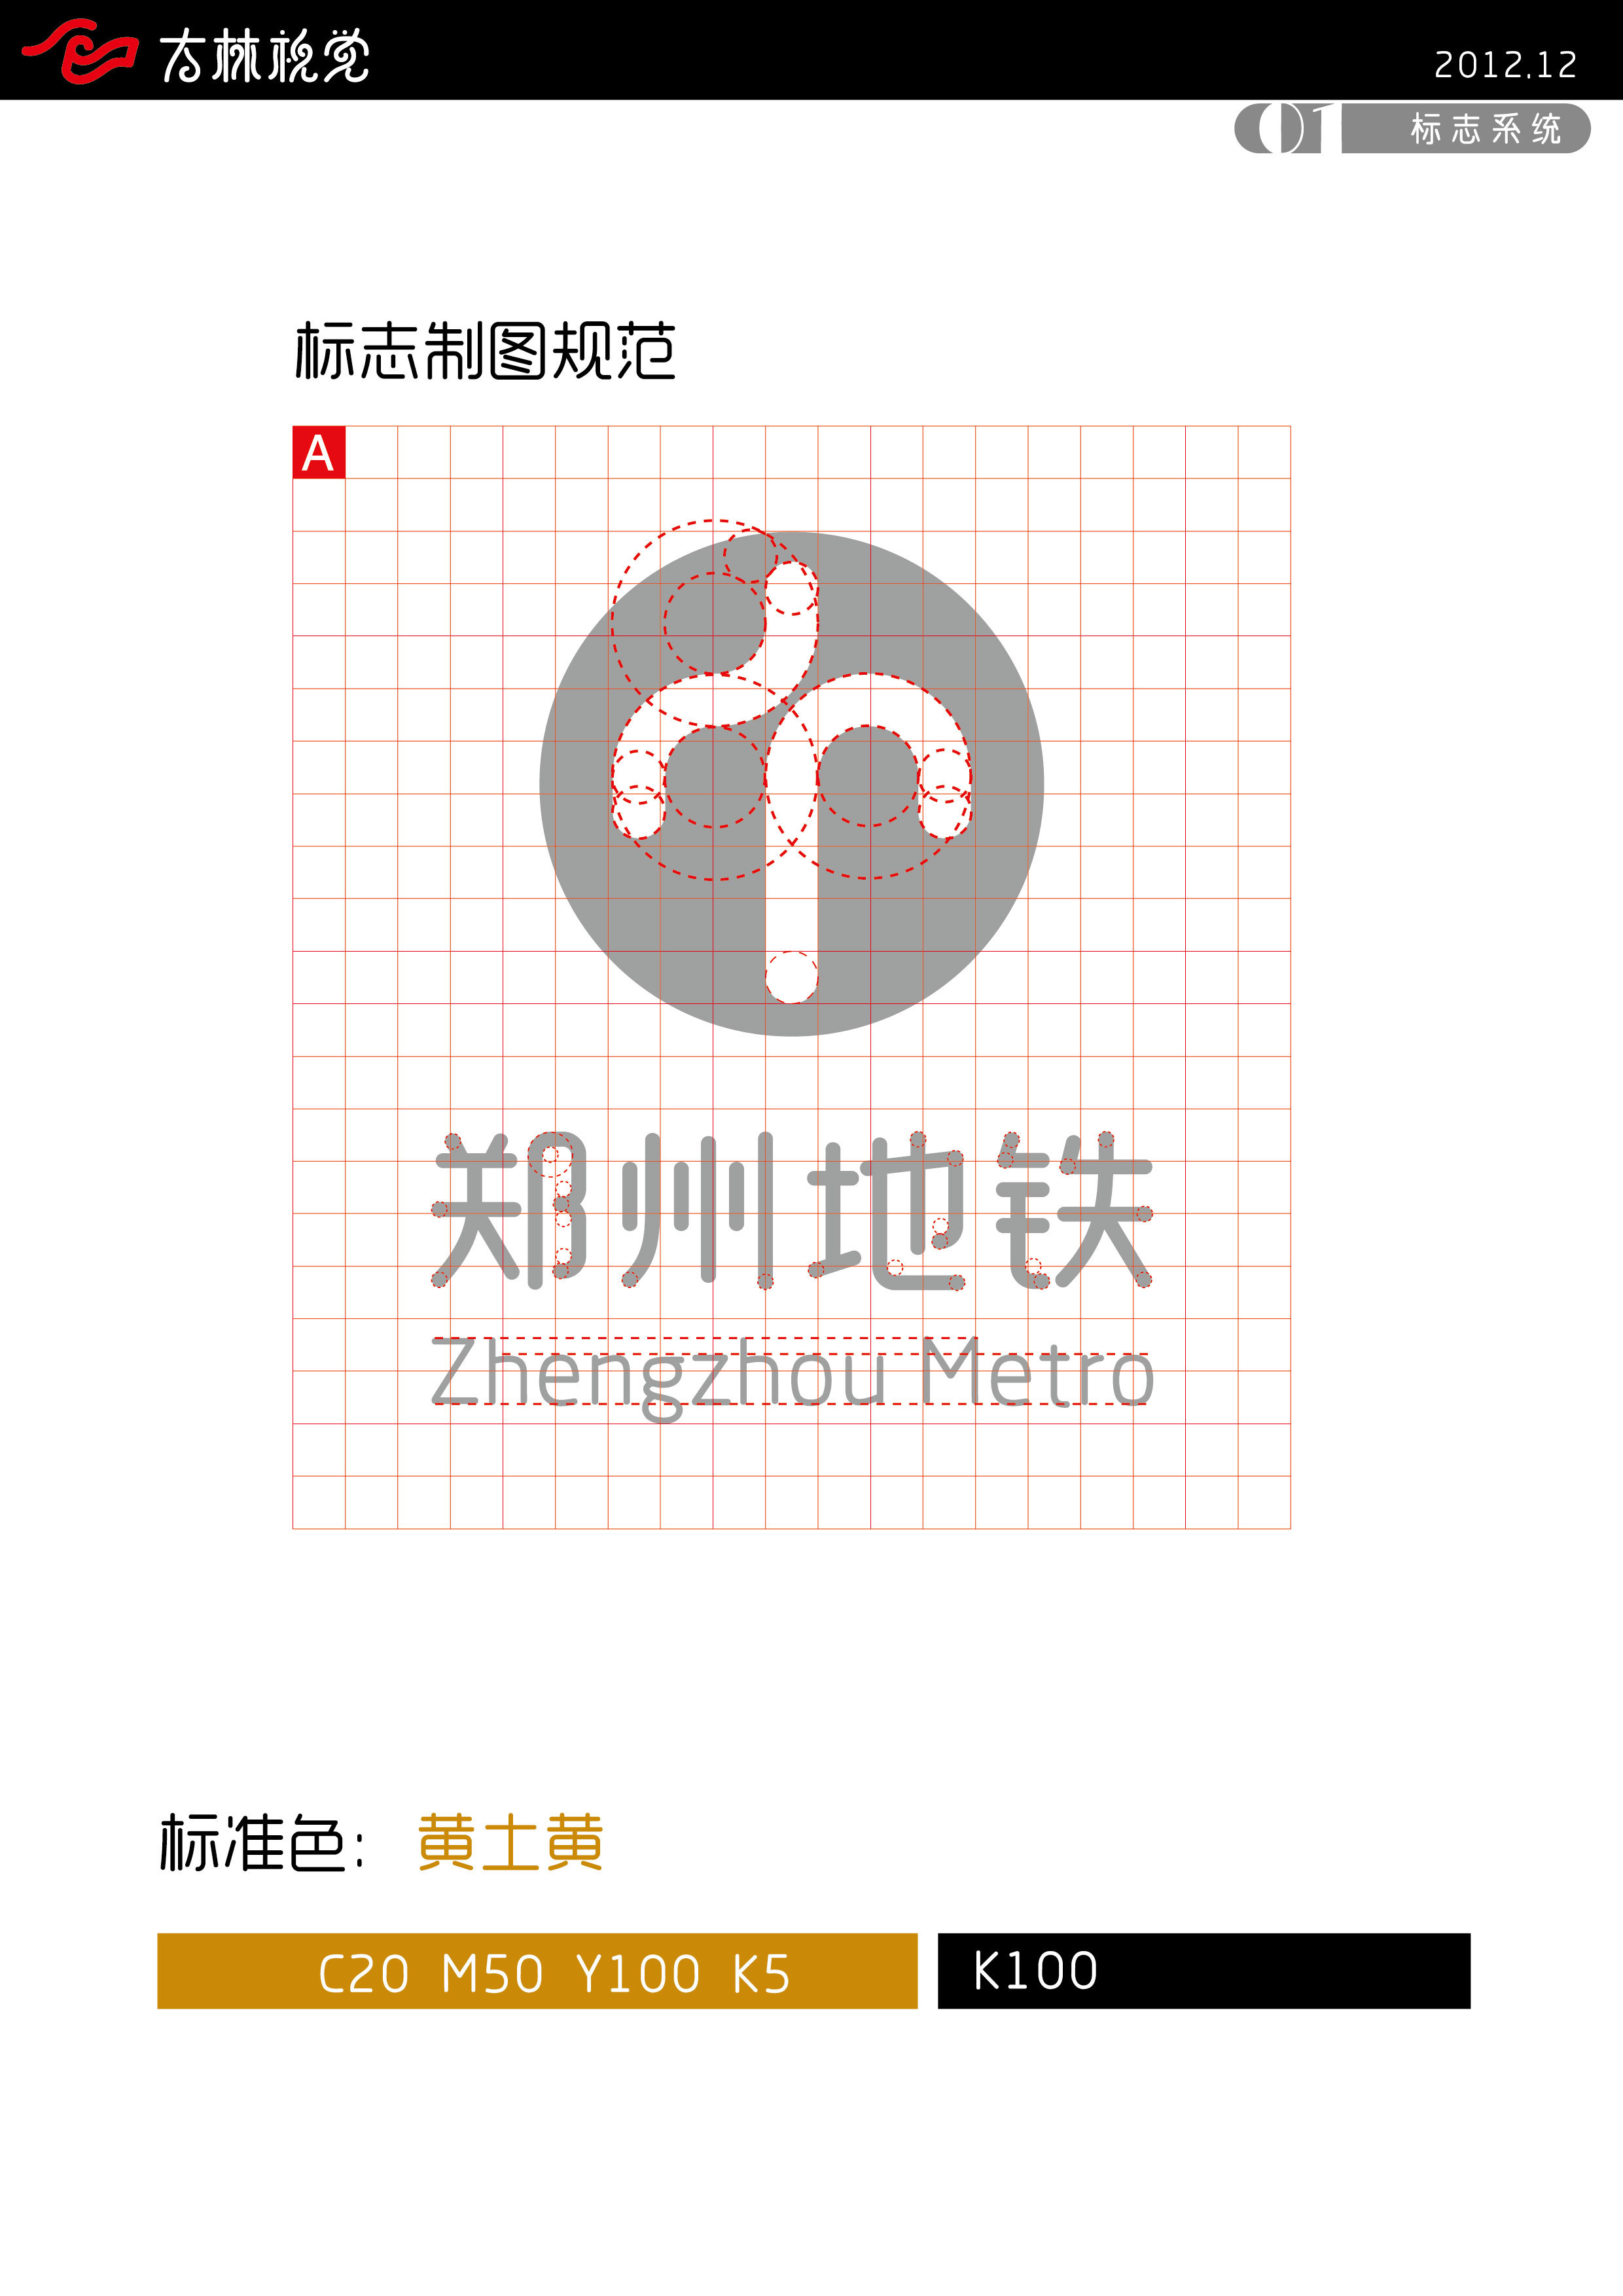 郑州地铁logo设计含义图片